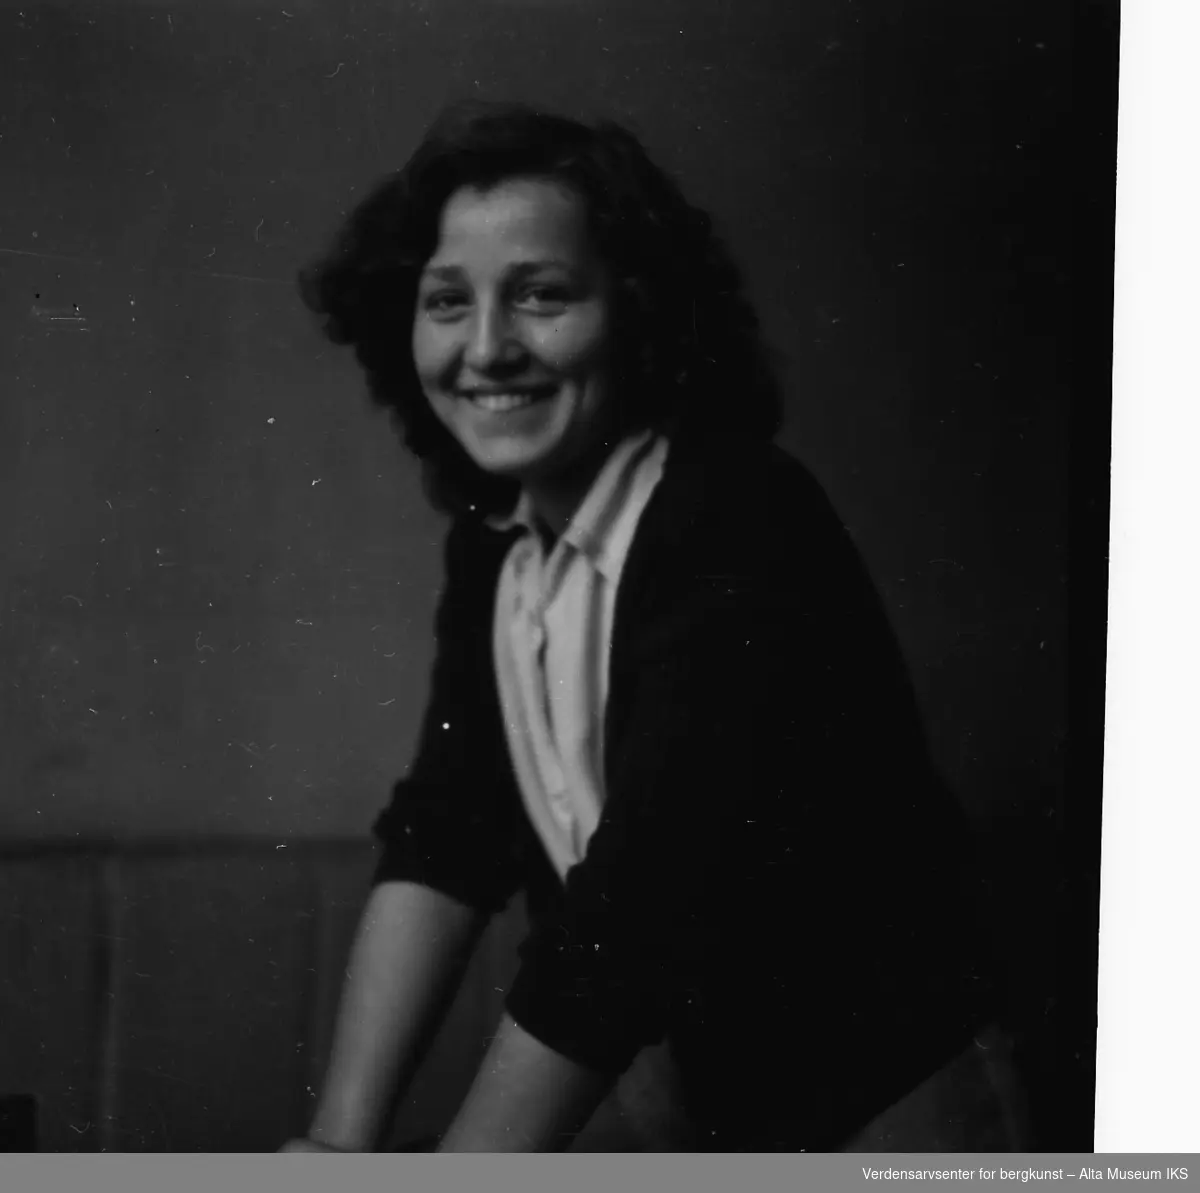 Portrettbilde av en ung kvinne som smiler til kameraet. Hun lener seg mot noe.